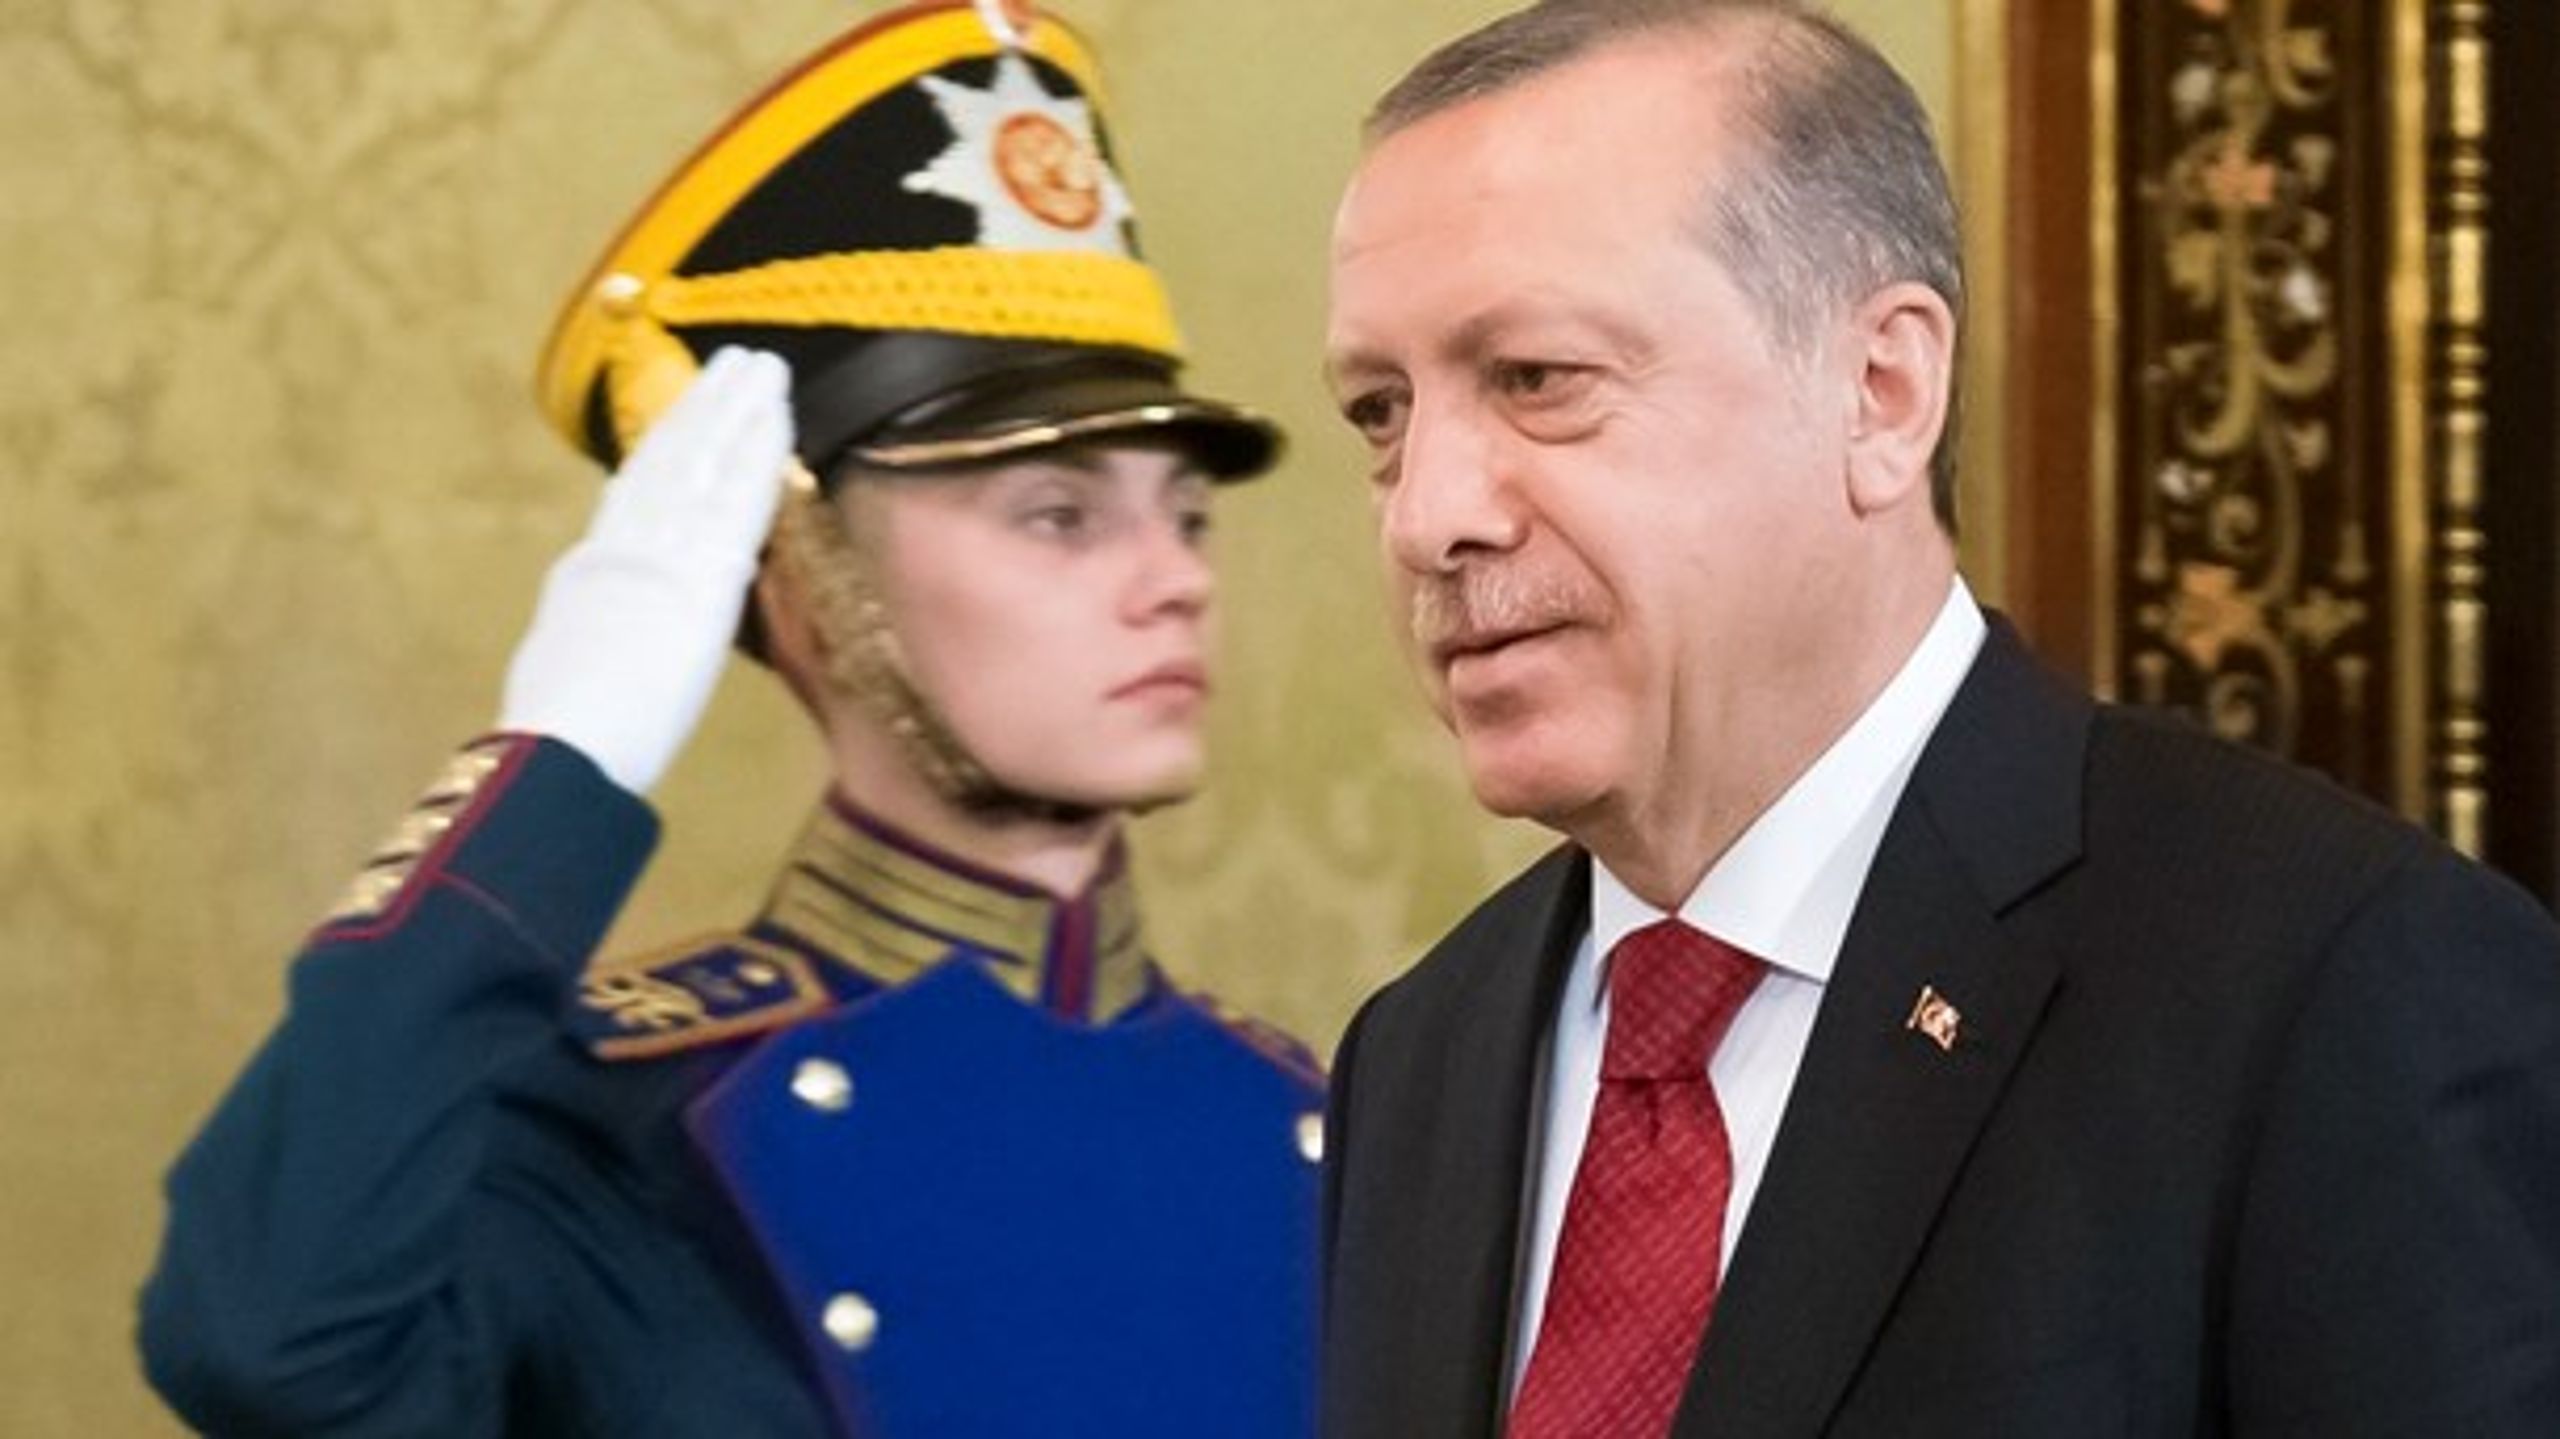 LOMMEDIKTATOR: Selvom f.eks. Tyrkiets Erdogan presser vilkårene for de internationale relationer, er det bedre at have Tyrkiet inde i varmen end uden for.